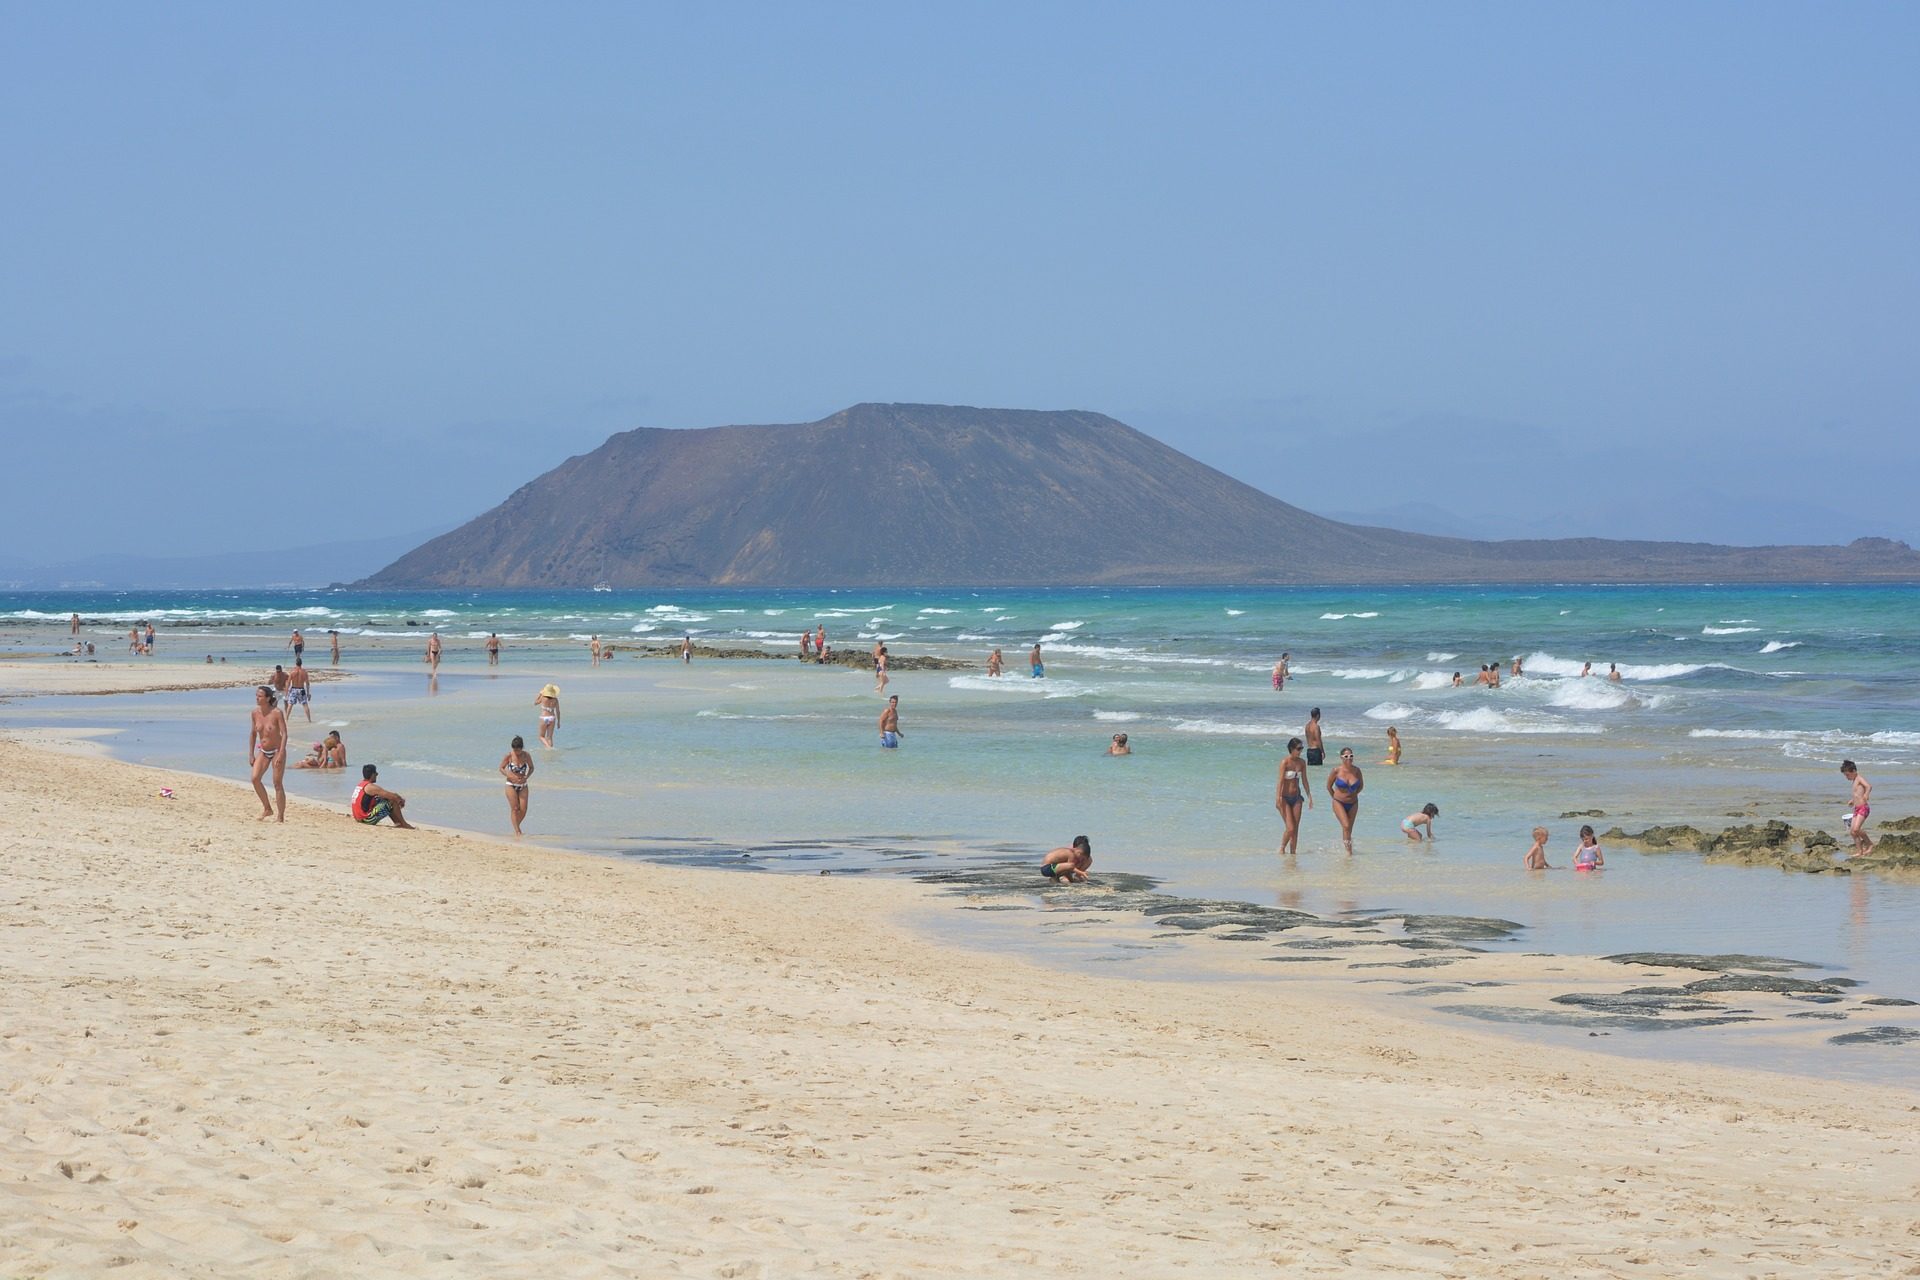 Der Strand All Inclusive Urlaub Fuerteventura günstiger buchen ab 274,00€